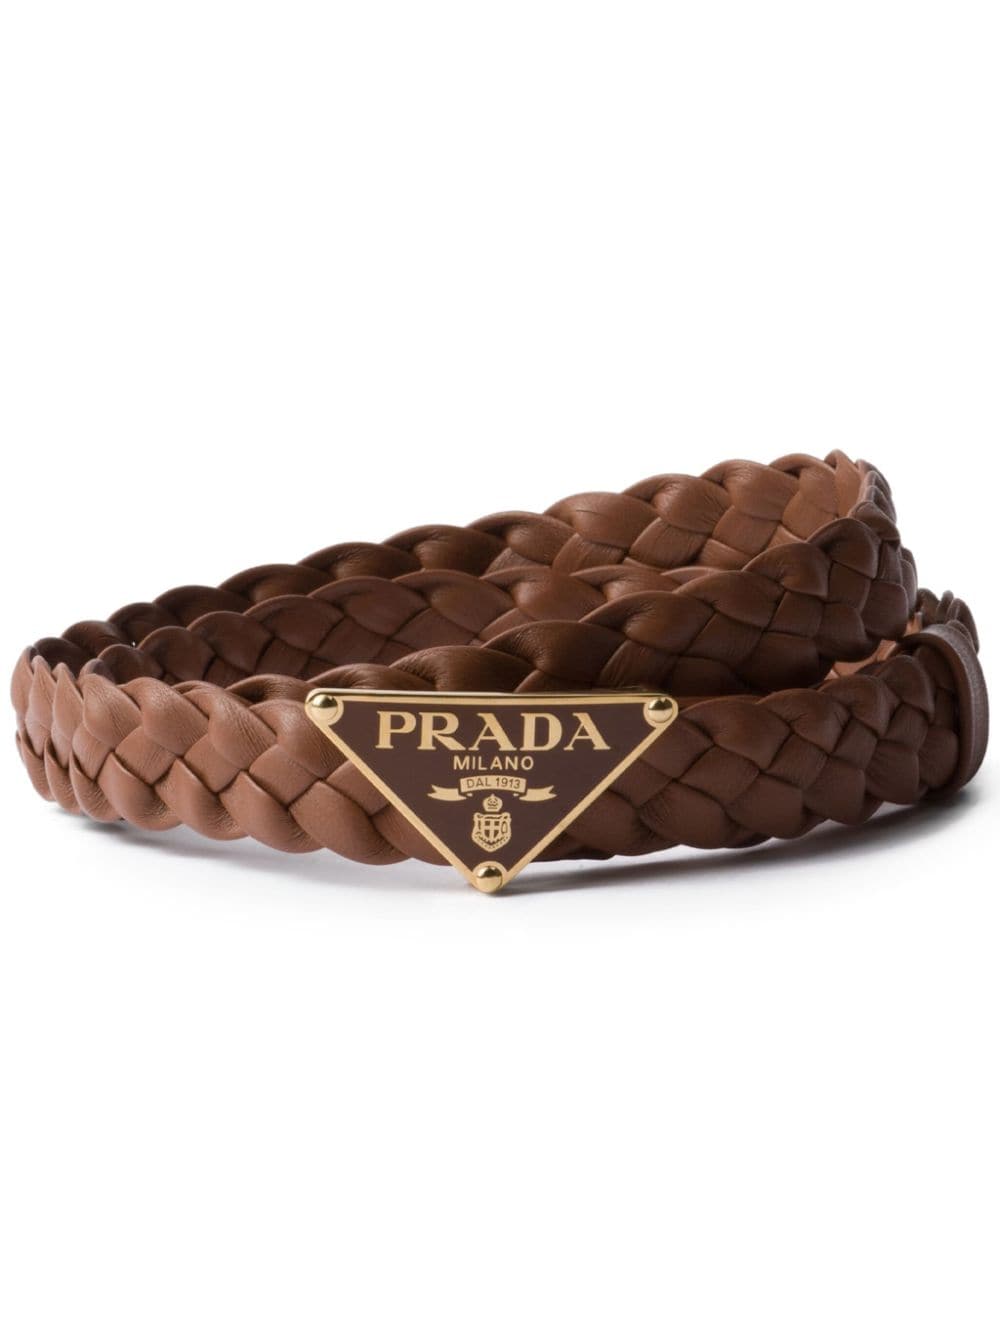 Prada braided leather belt - Brown von Prada